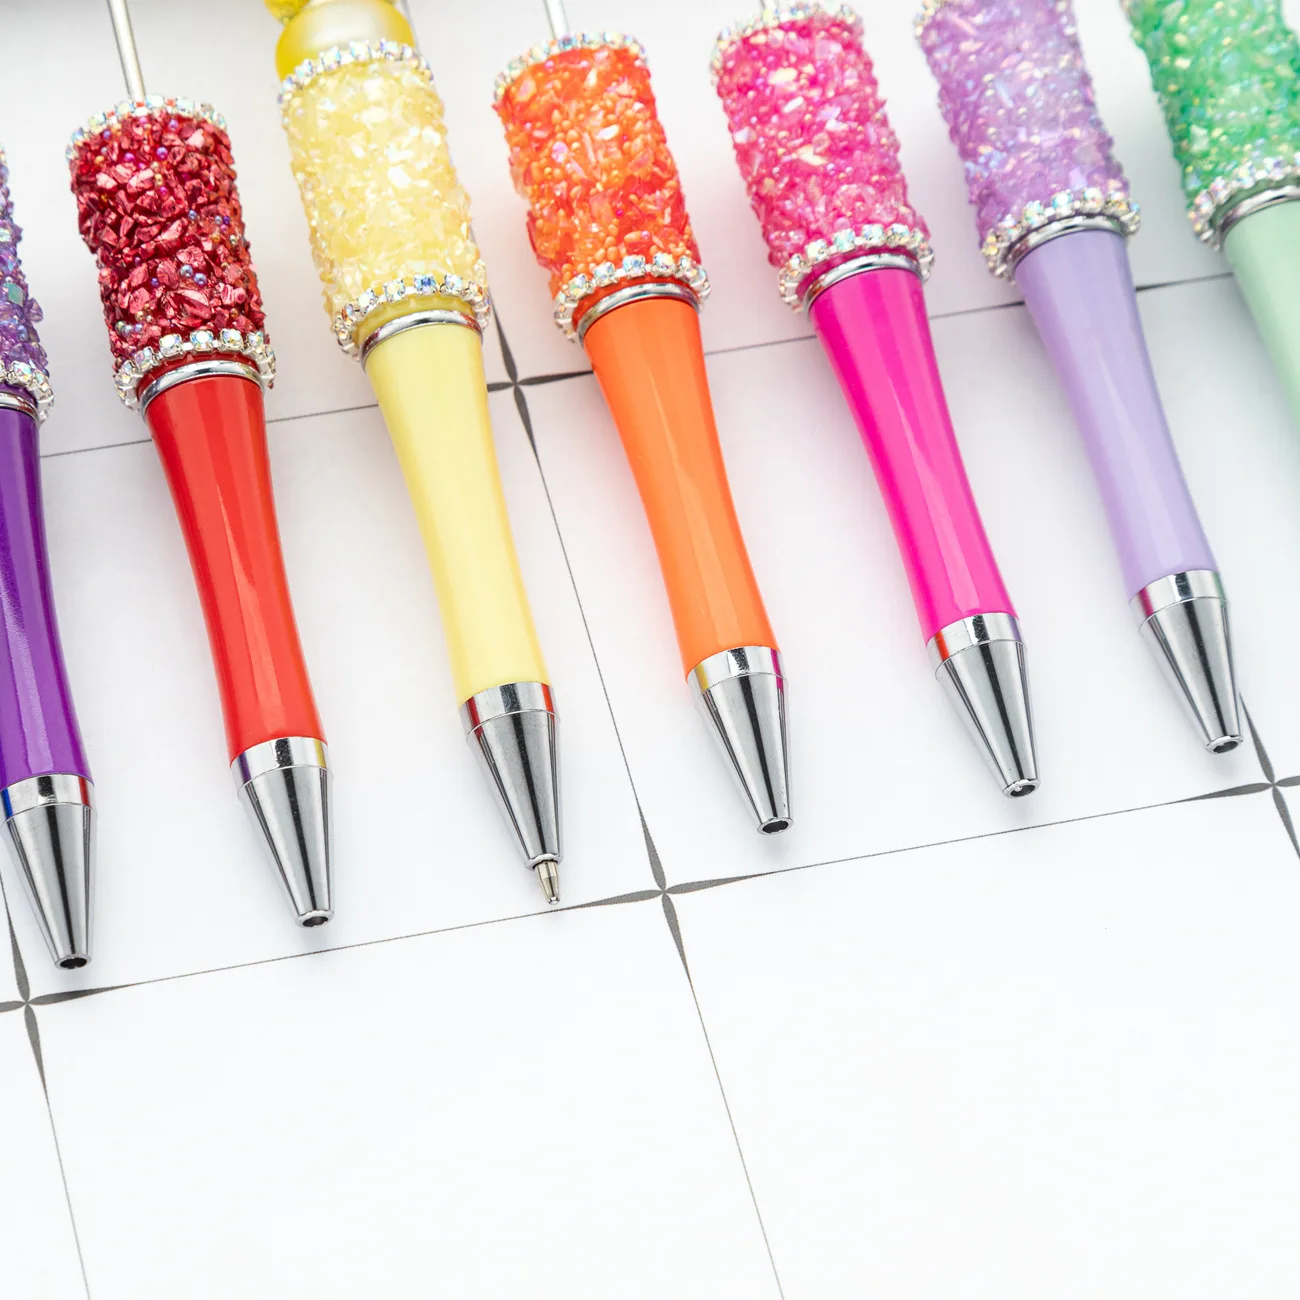 قلم DiamondsBead المجروش الكريستالي ، مجموعة ملصقات يدوية الصنع إبداعية ، أقلام حبر جاف مطرزة بالخرز الماسي ، 60 ، بيع بالجملة